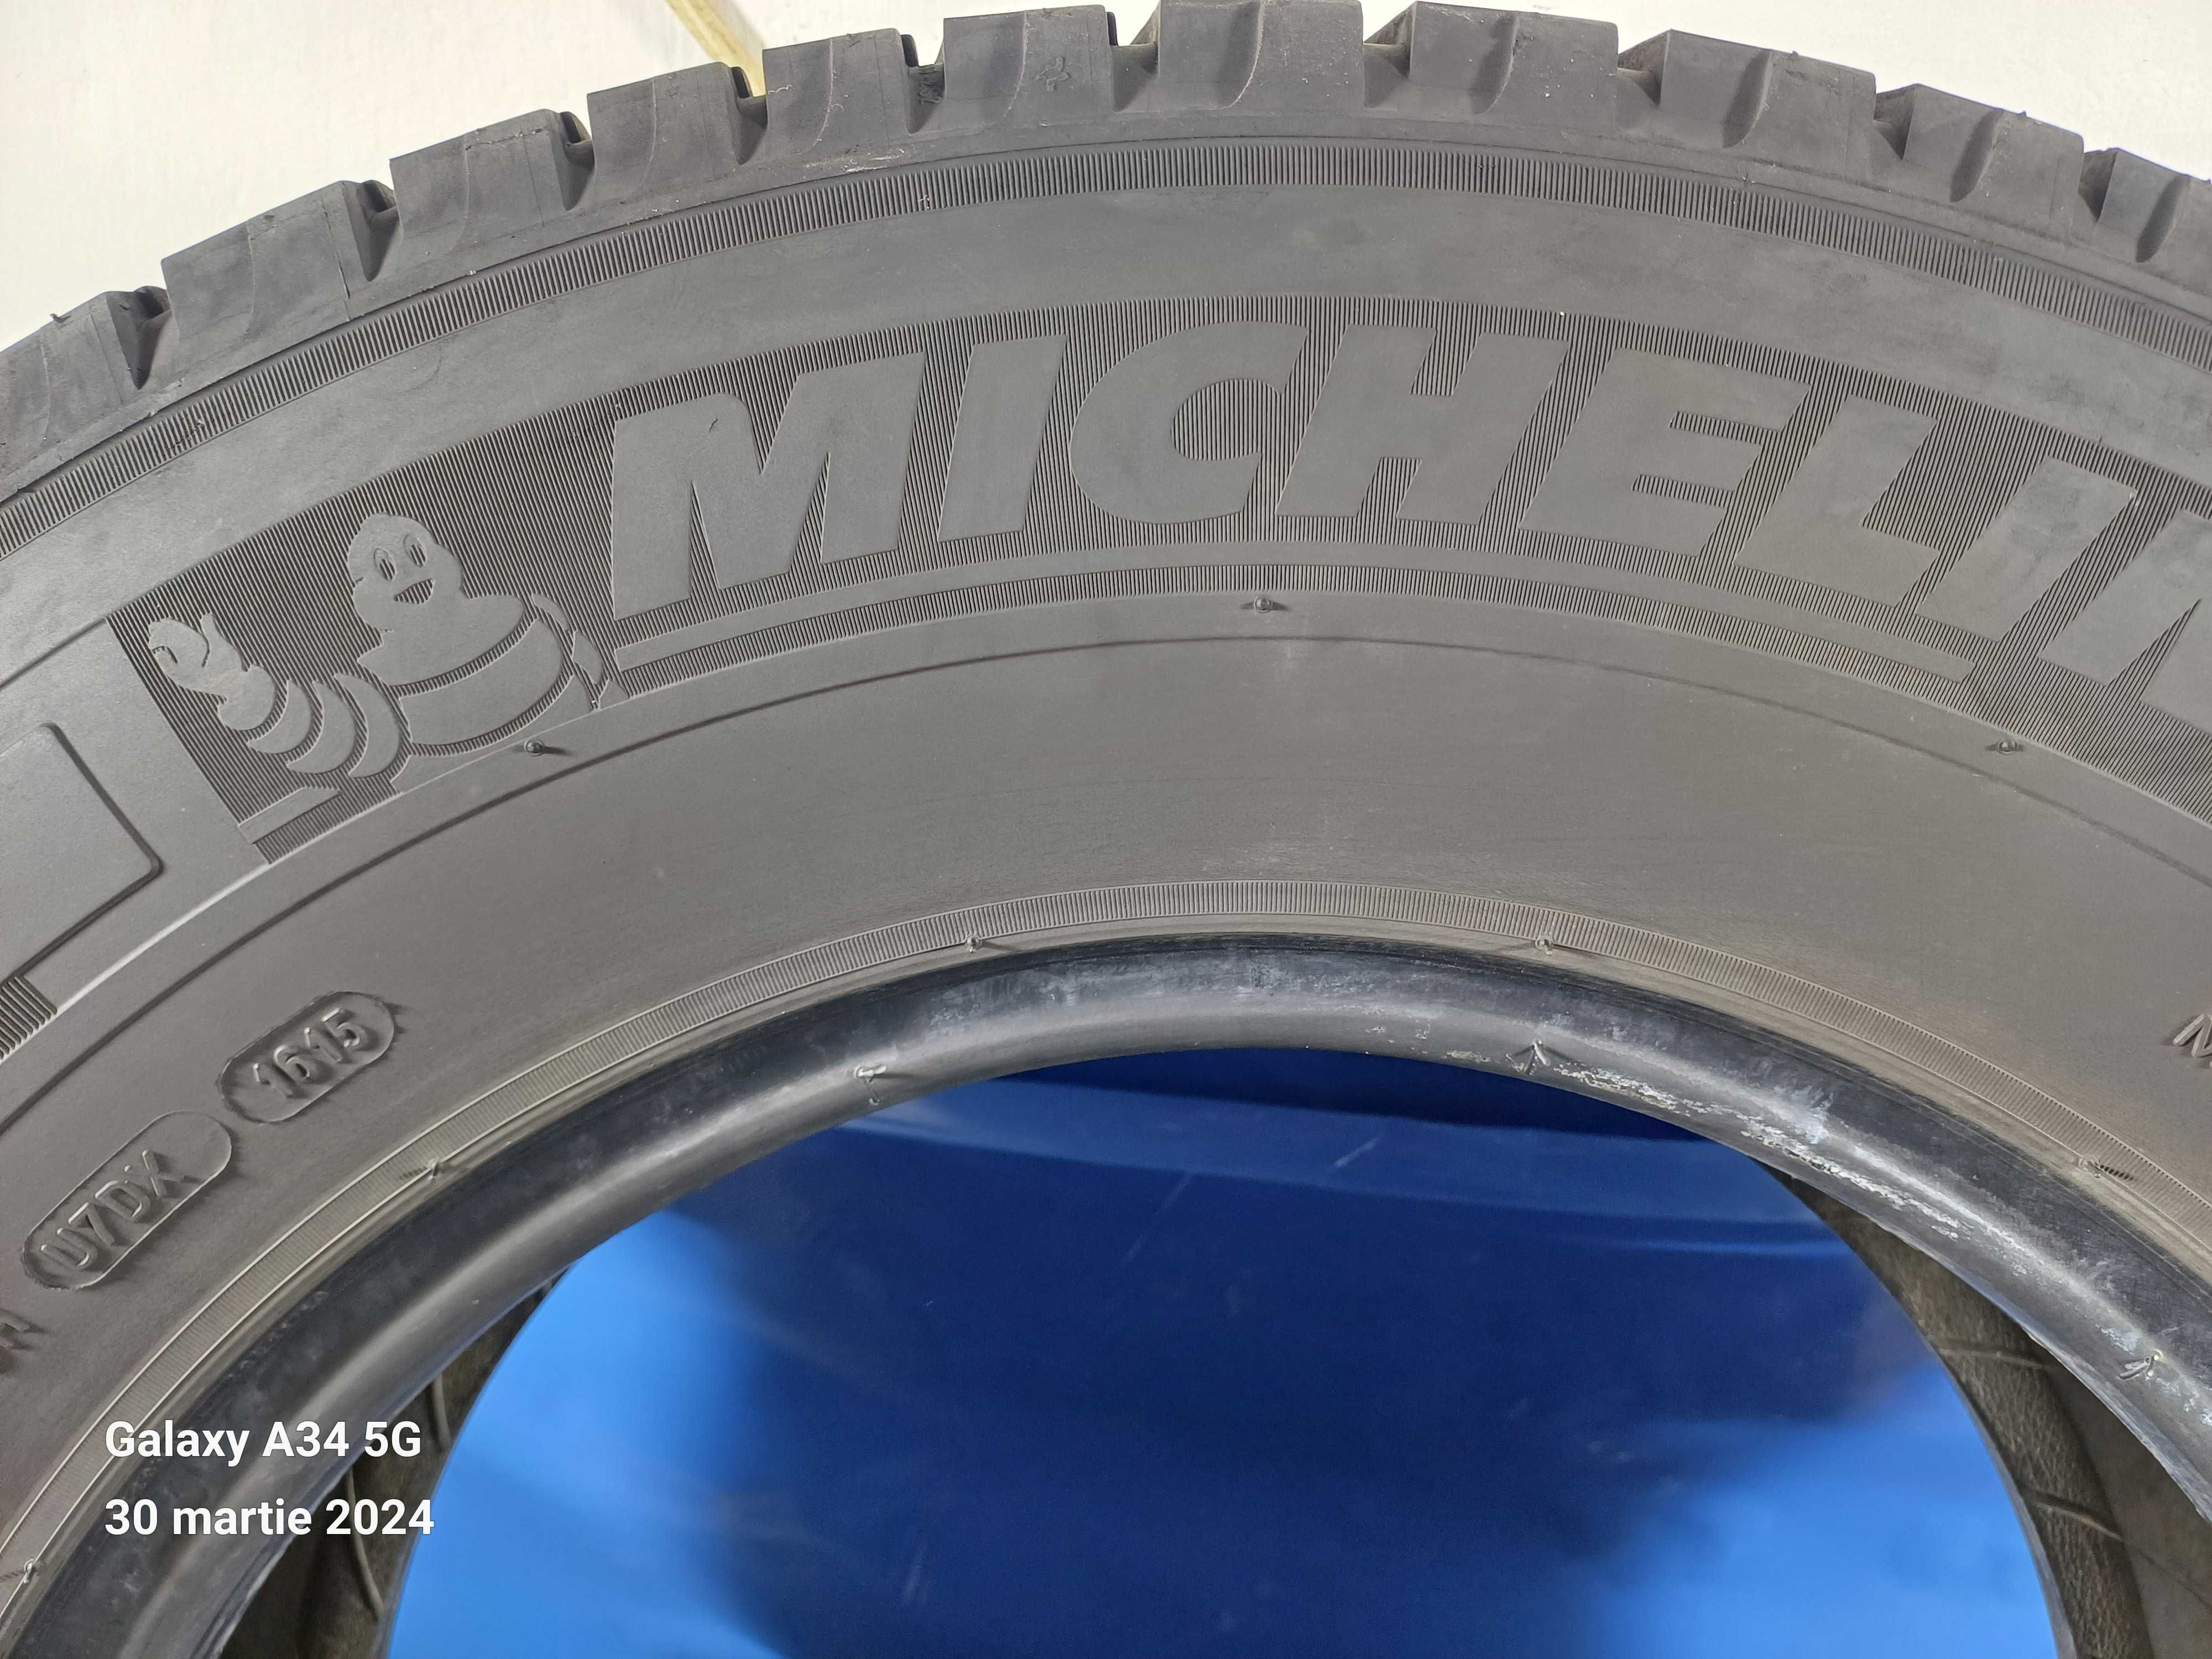 225/75/16 c Michelin